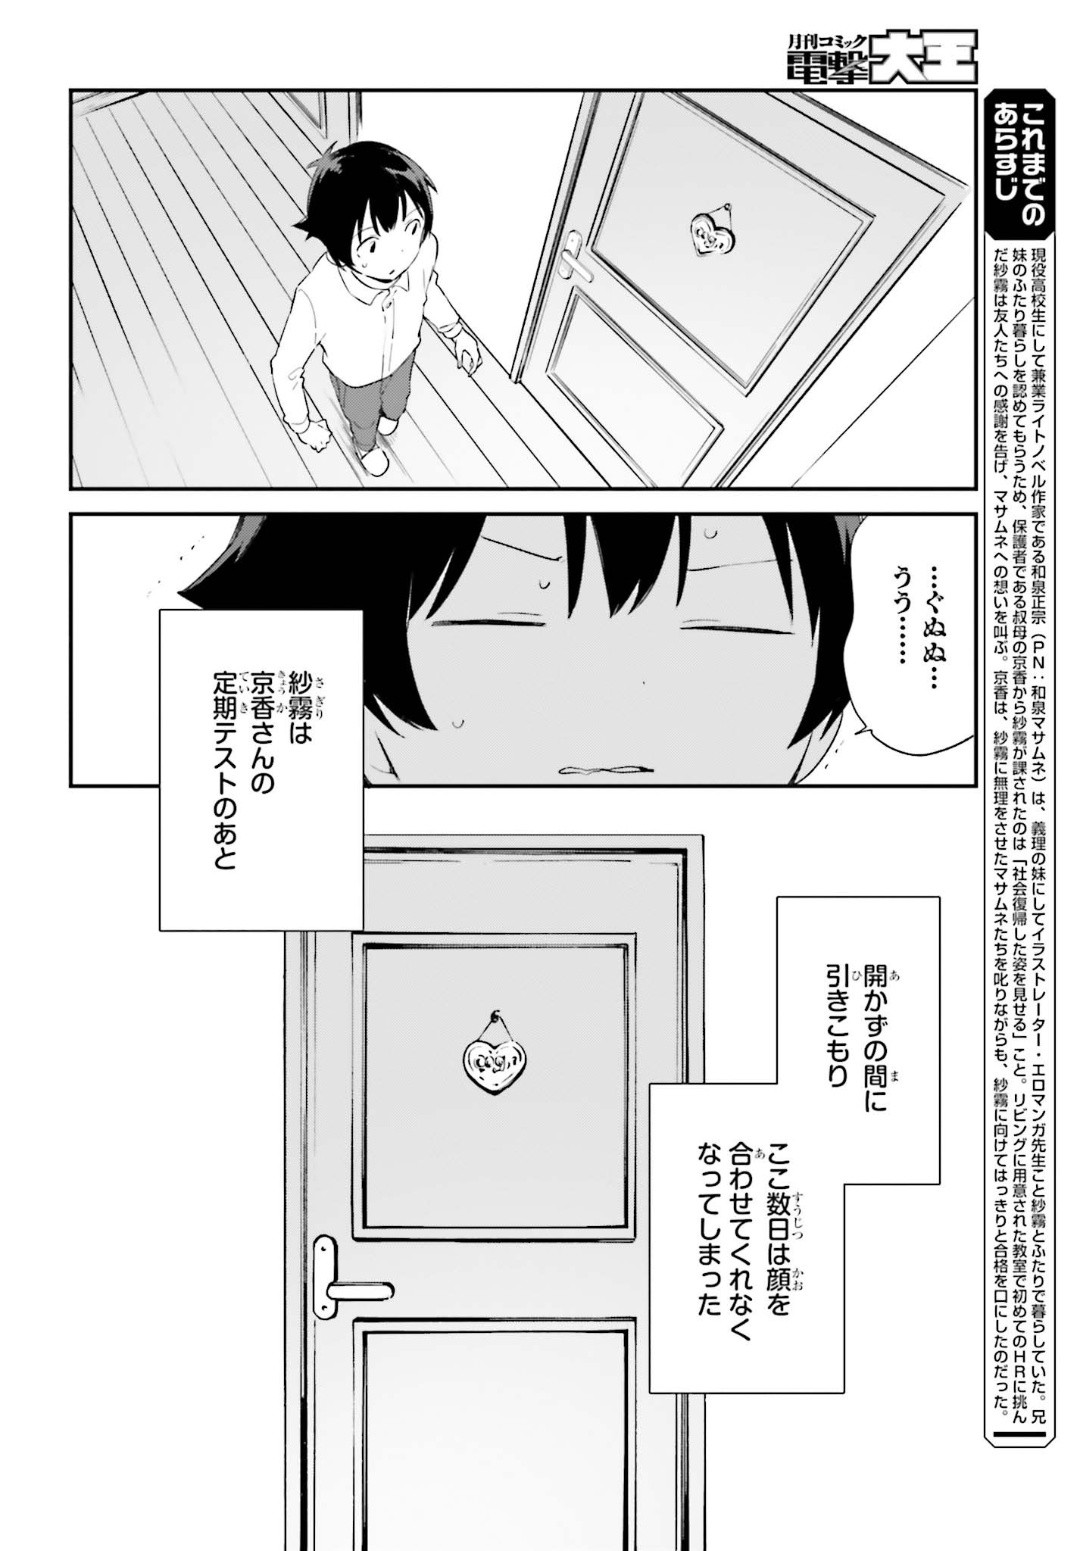 Ero Manga Sensei - Chapter 65 - Page 2